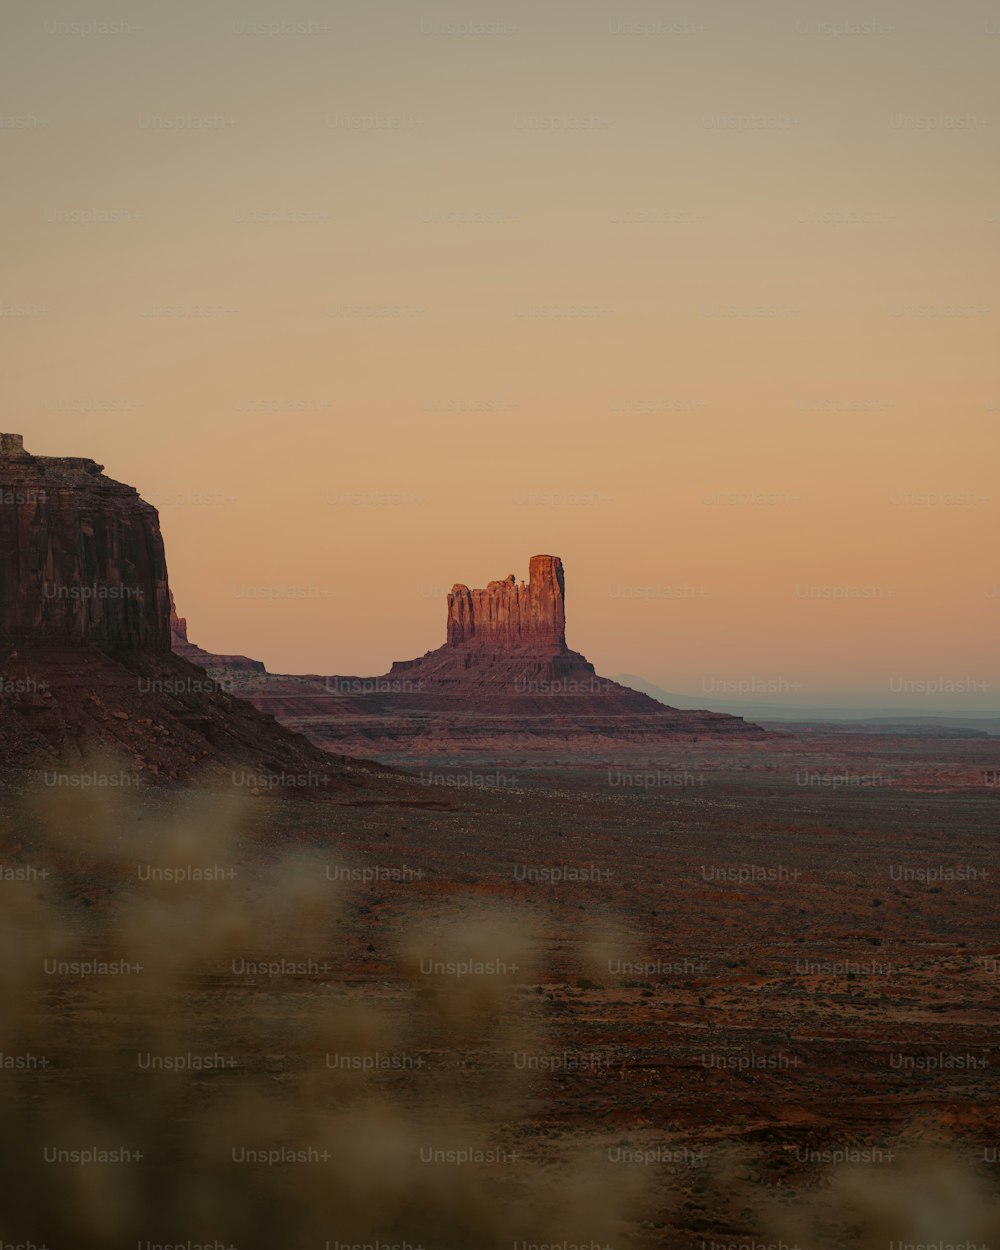 砂漠の真ん中にある大きな岩層